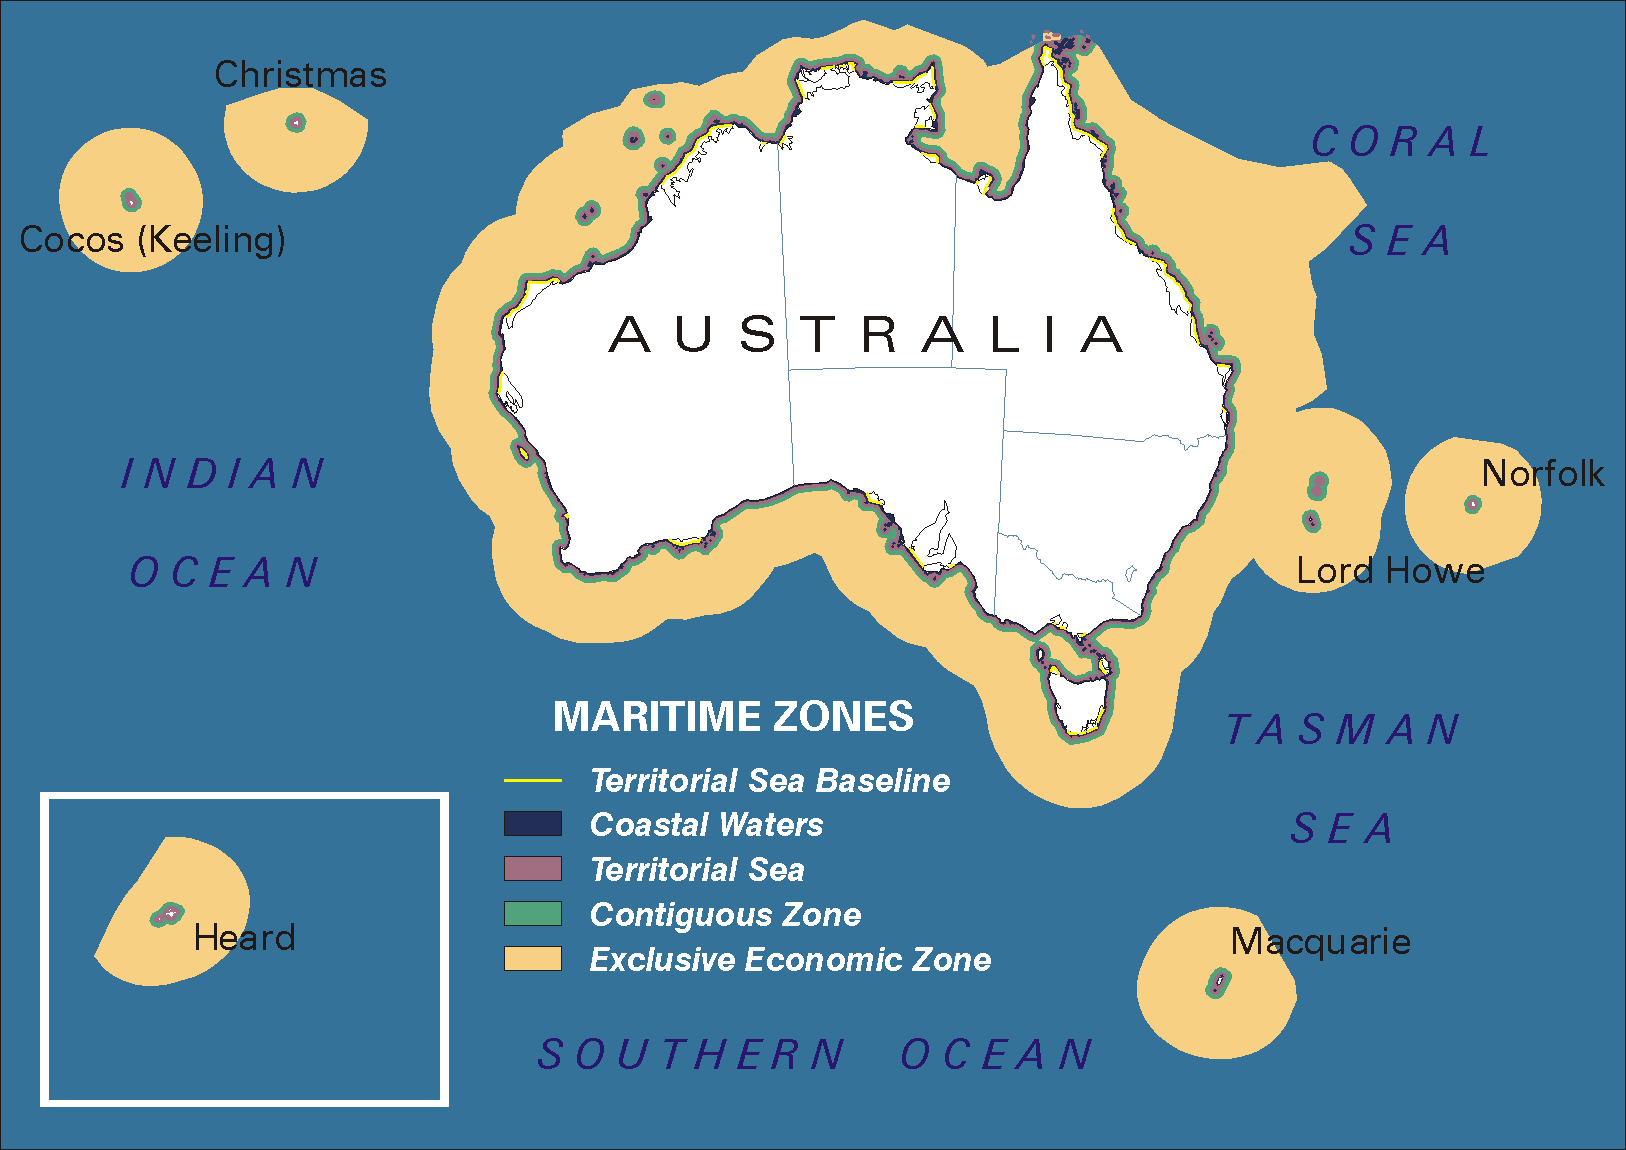 Maritime zones map of Australia